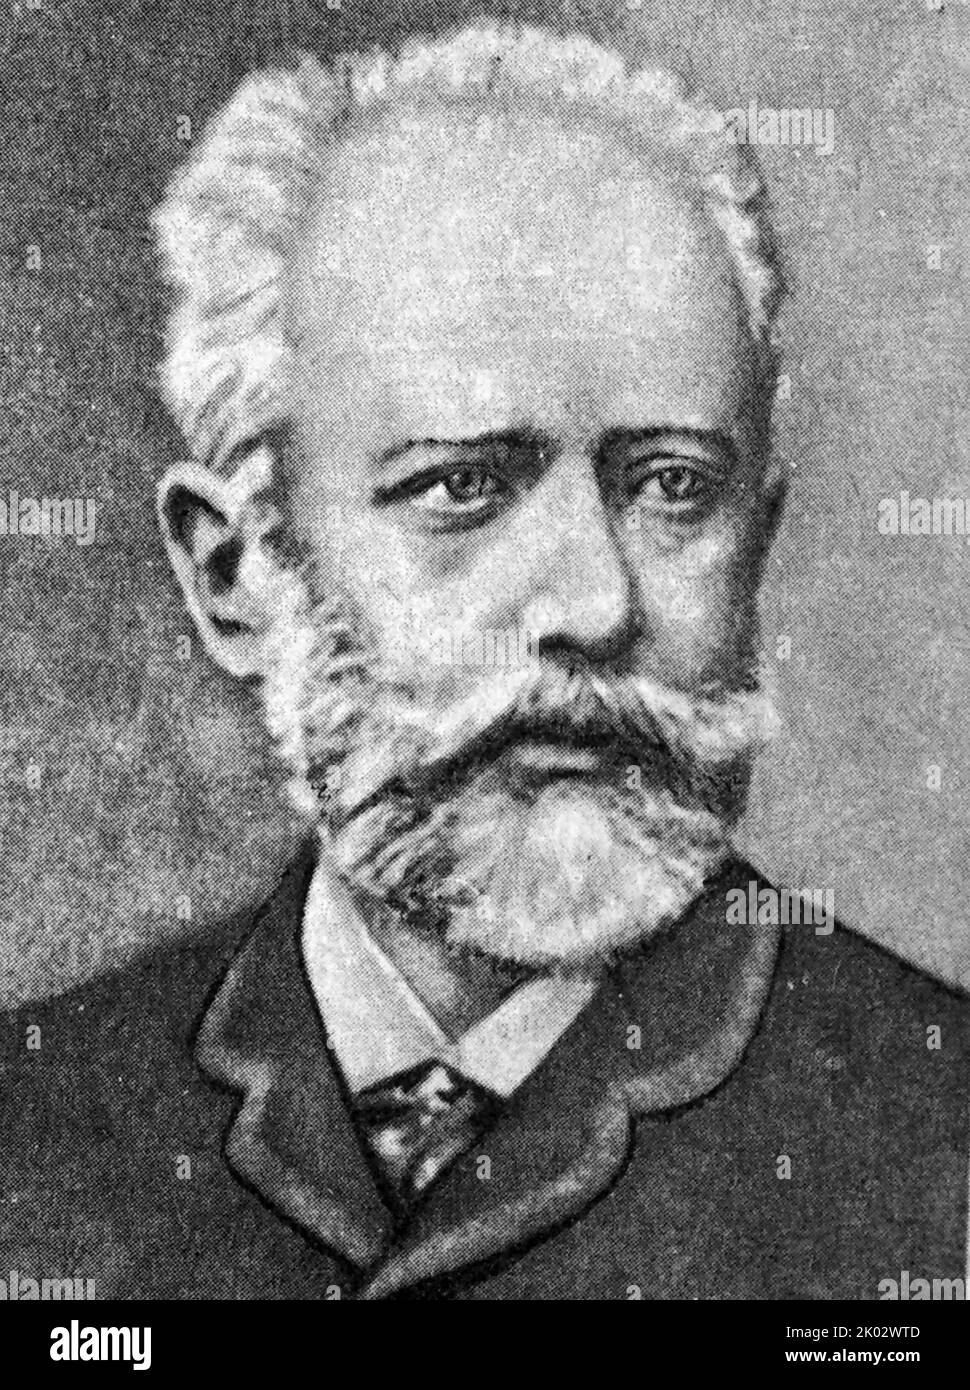 Pjotr Iljitsch Tschaikowsky (1840 - 1893) ein russischer Komponist der Romantik. Stockfoto